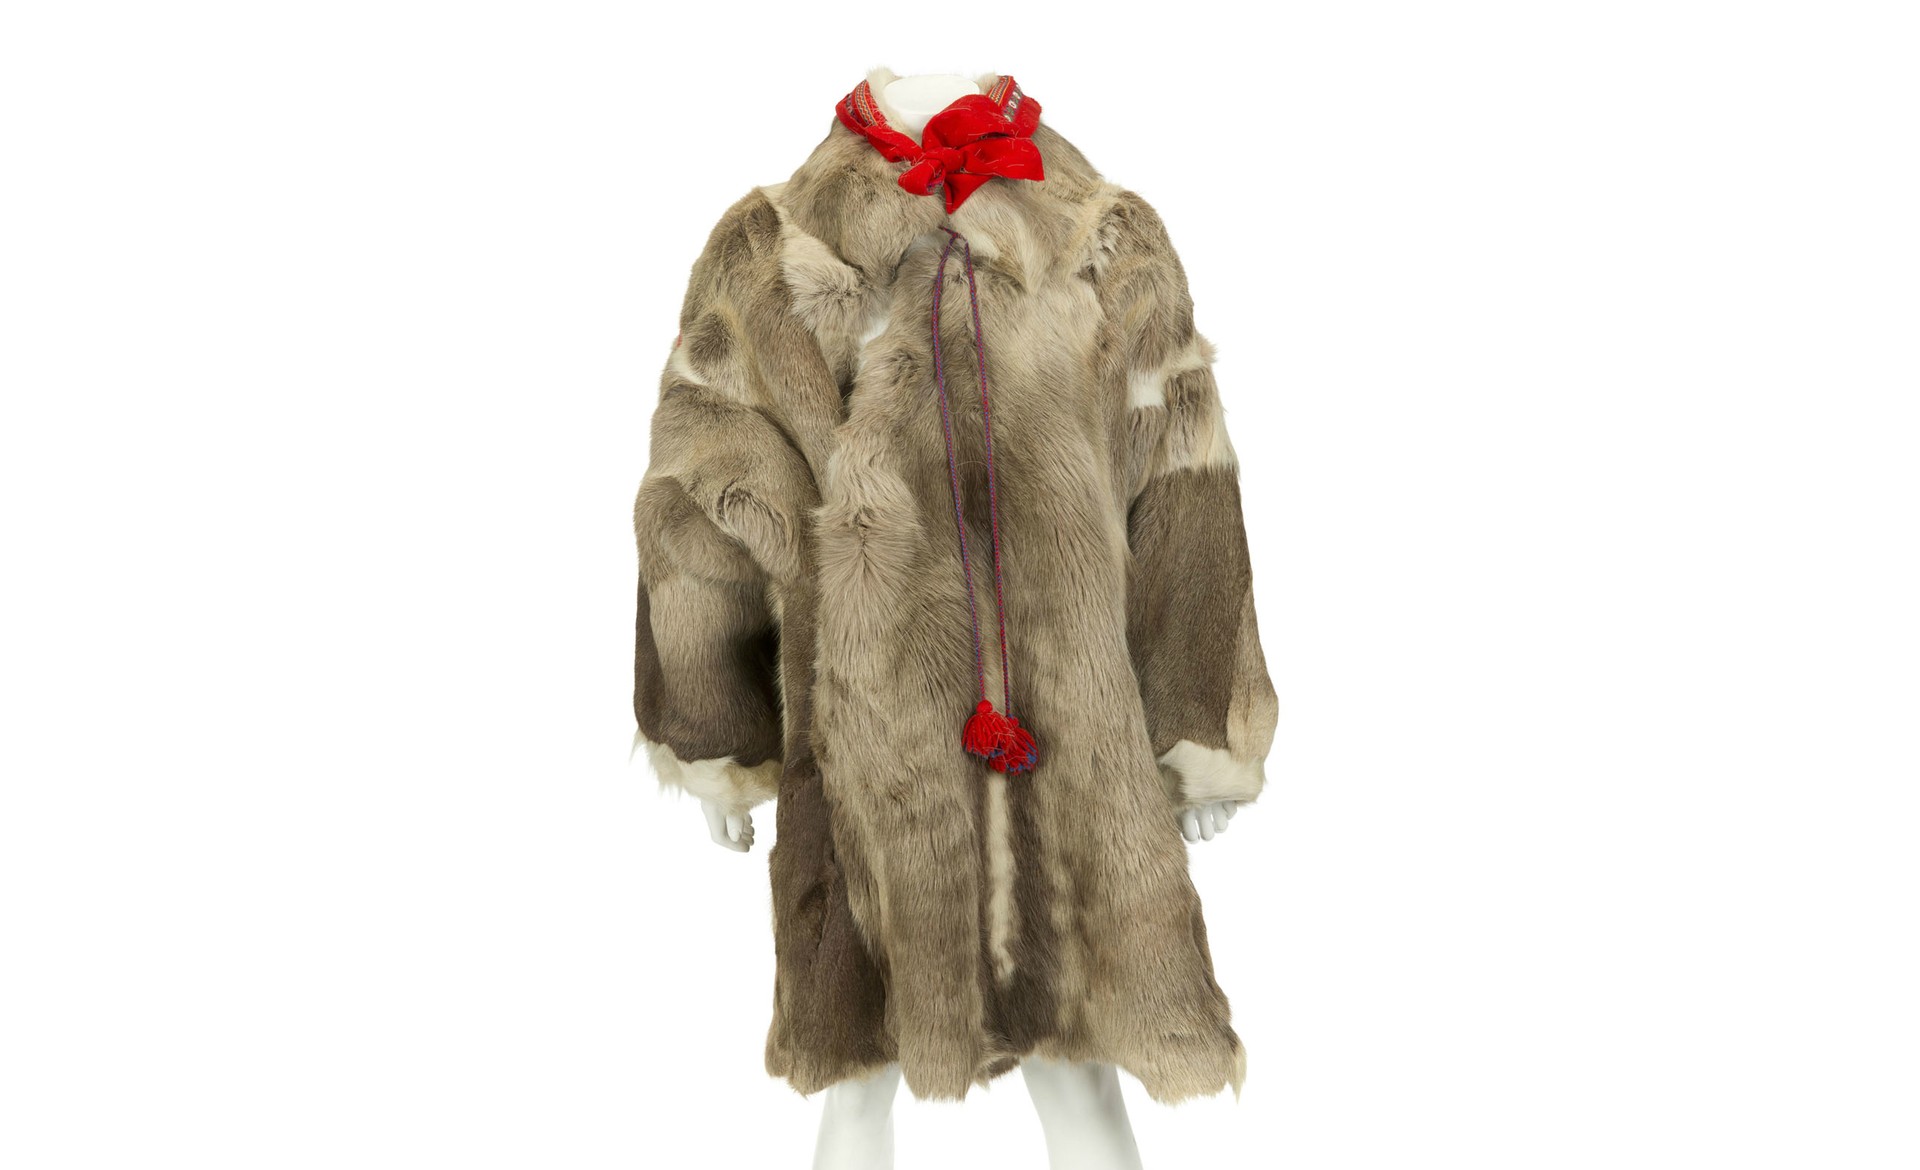 Um casaco de pele (provavelmente de antílope ou de uapiti) à moda dos esquimós. O valor estimado varia de 800 a 1,2 mil dólares (1,8 mil a 2,7 mil reais). (Foto: Reprodução)